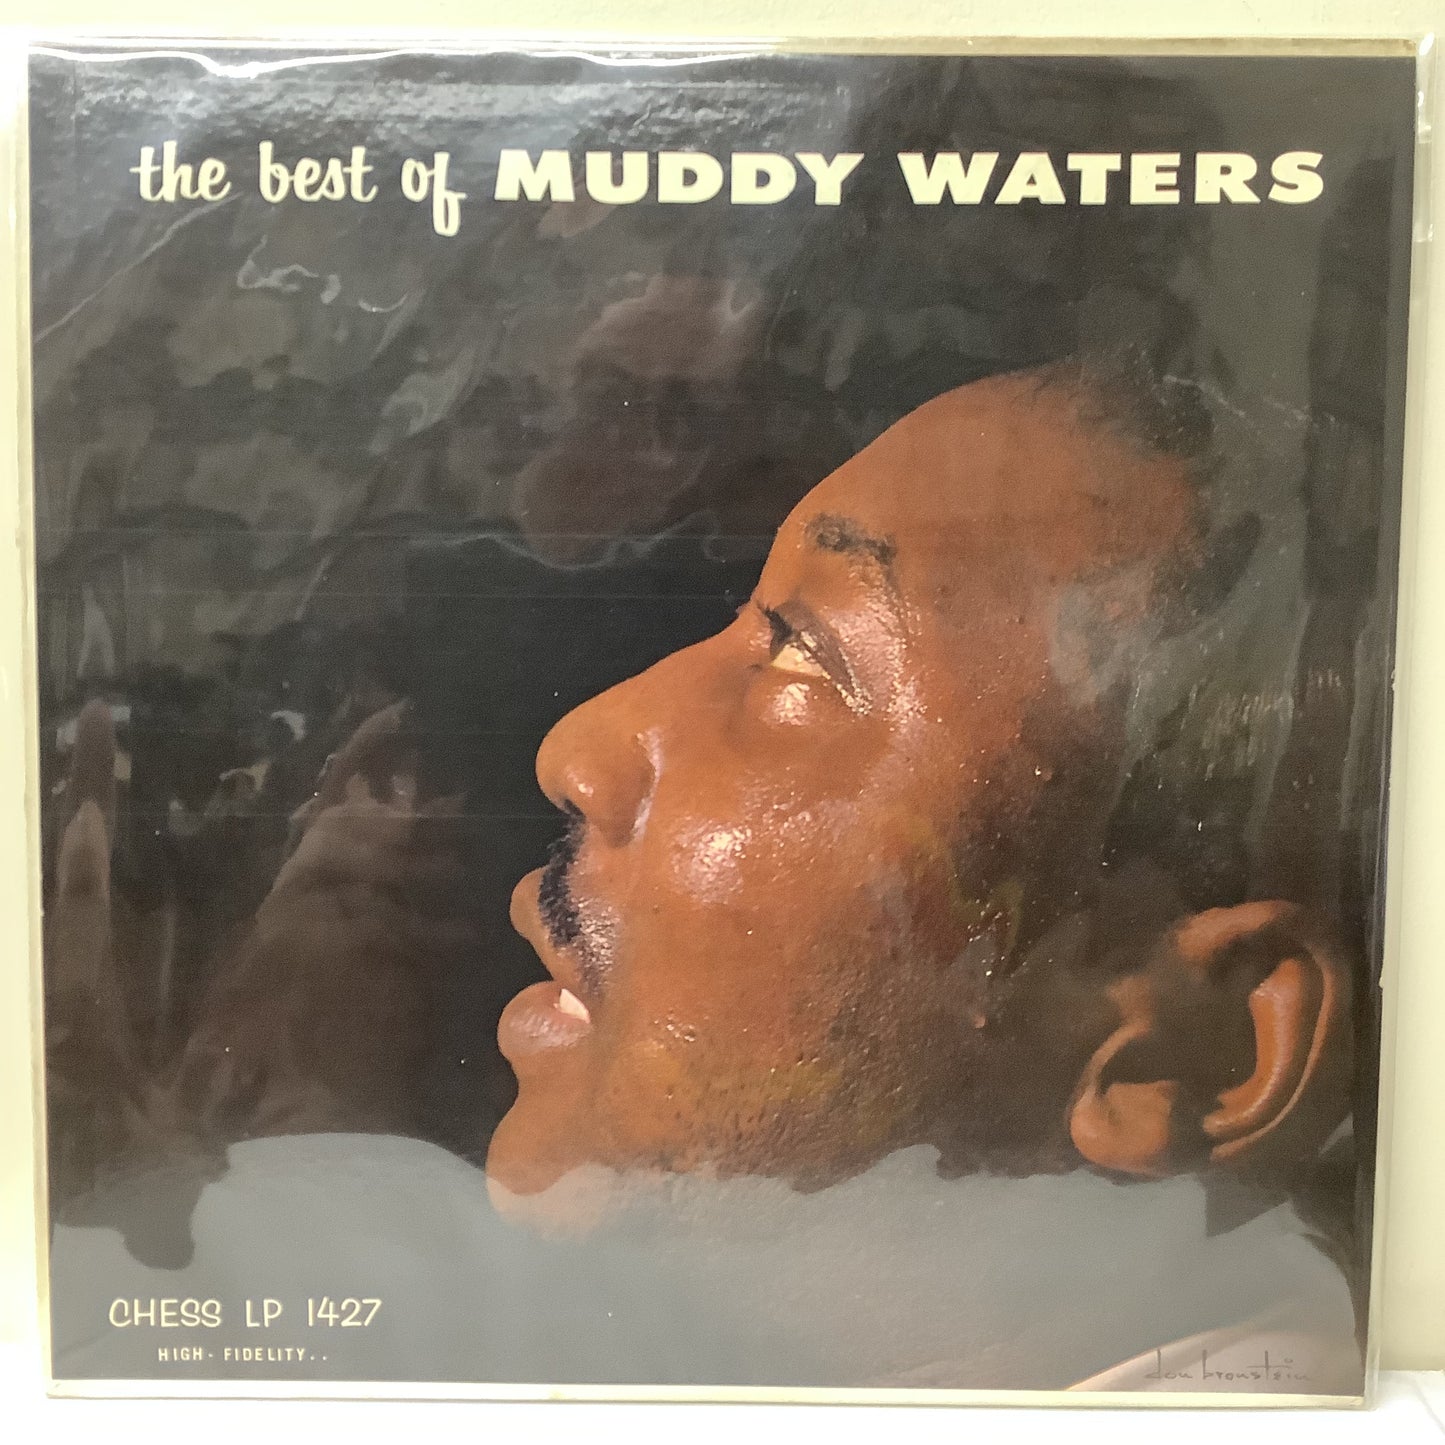 Muddy Waters - Lo mejor de Muddy Waters - Chess LP